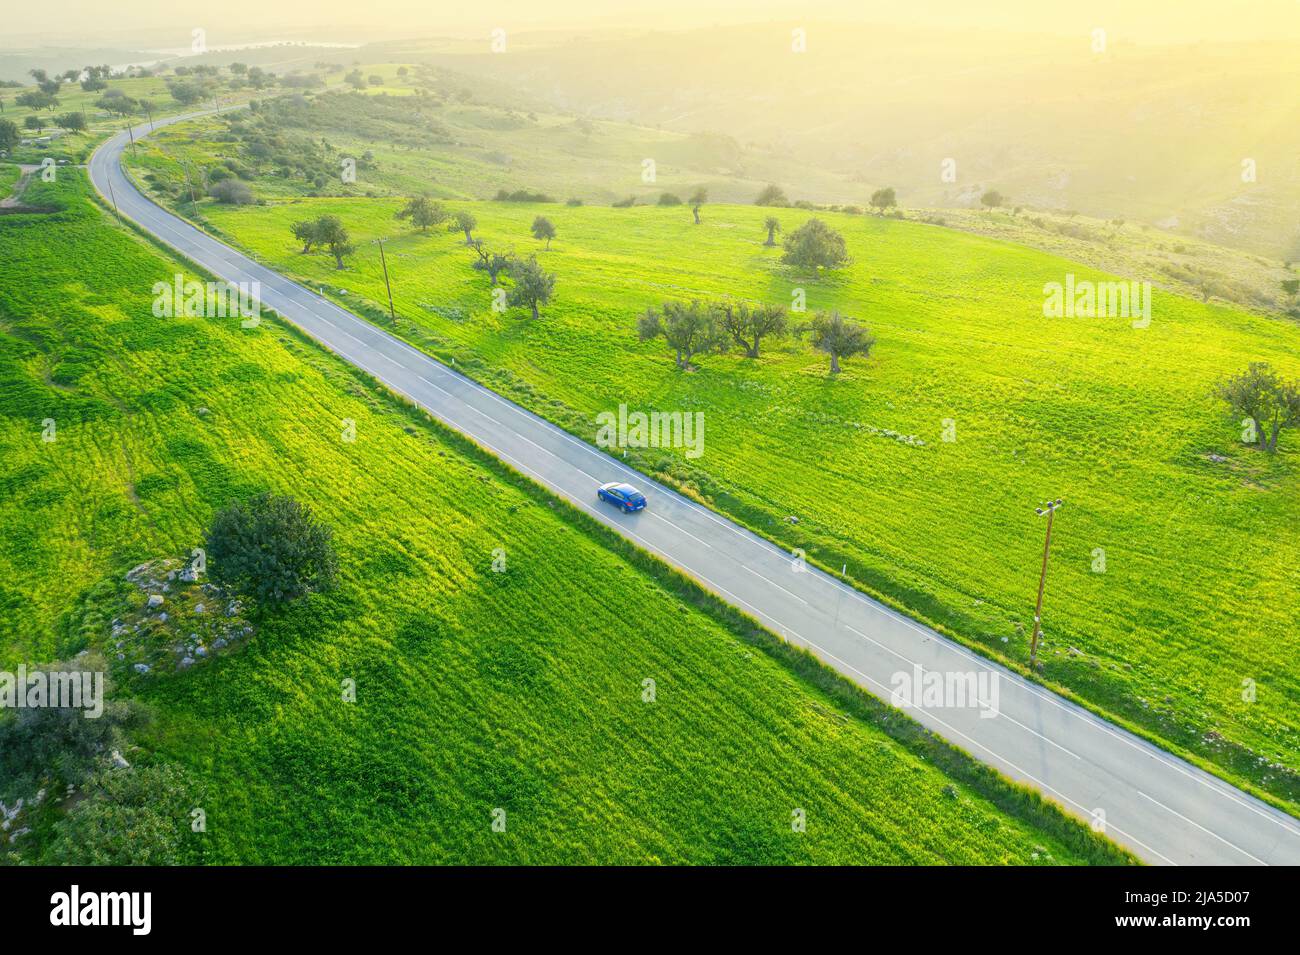 Paysage vert de campagne avec une voiture en descendant une route asphaltée et une voiture, vue de drone d'en haut Banque D'Images